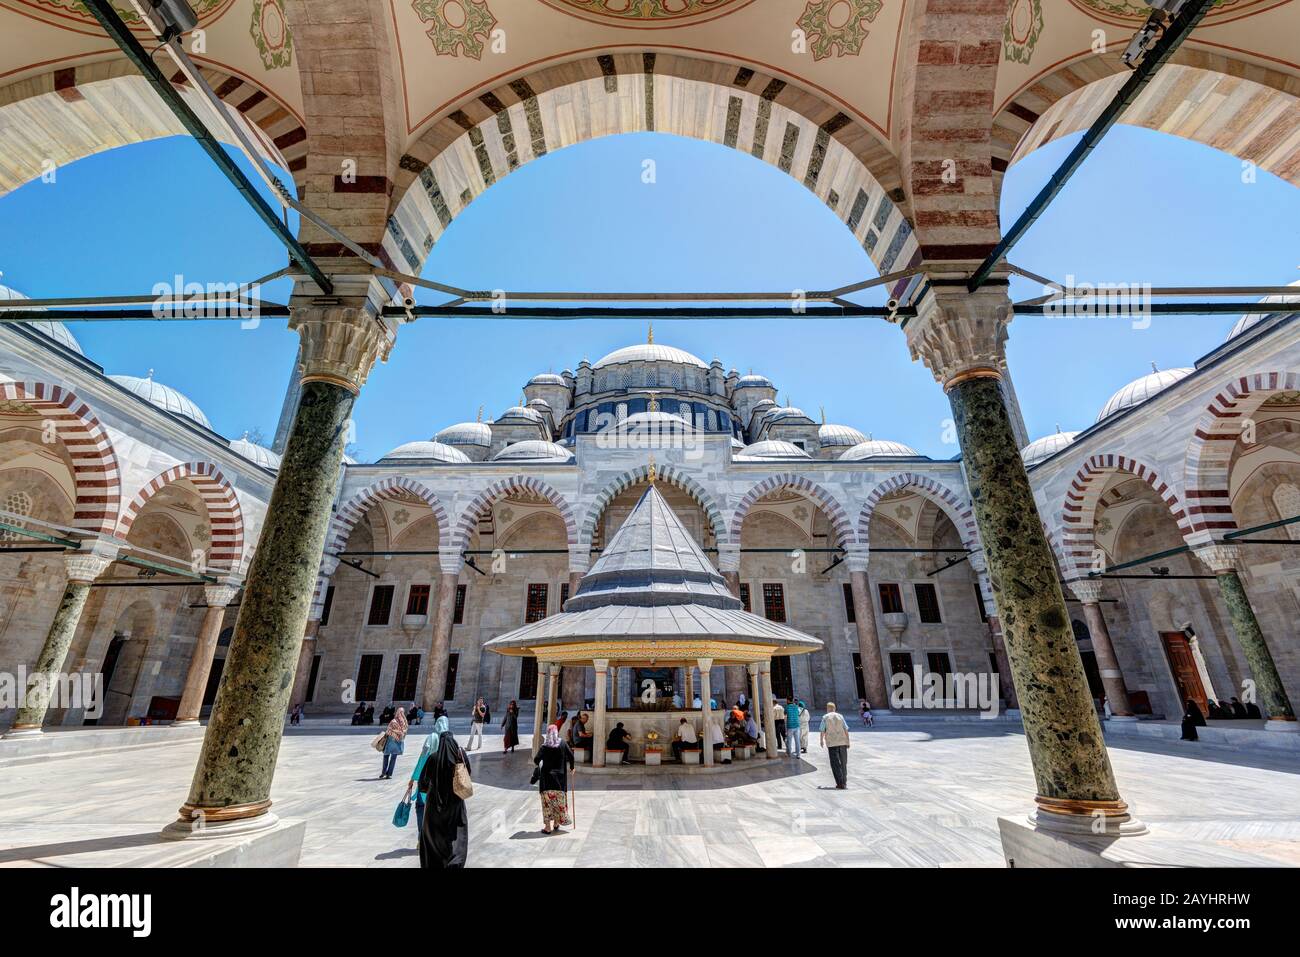 Istanbul - 26 MAGGIO: Il cortile interno della Moschea Fatih (Moschea del Conquistatore) il 26 maggio 2013 a Istanbul, Turchia. La Moschea Fatih (Conquero Foto Stock